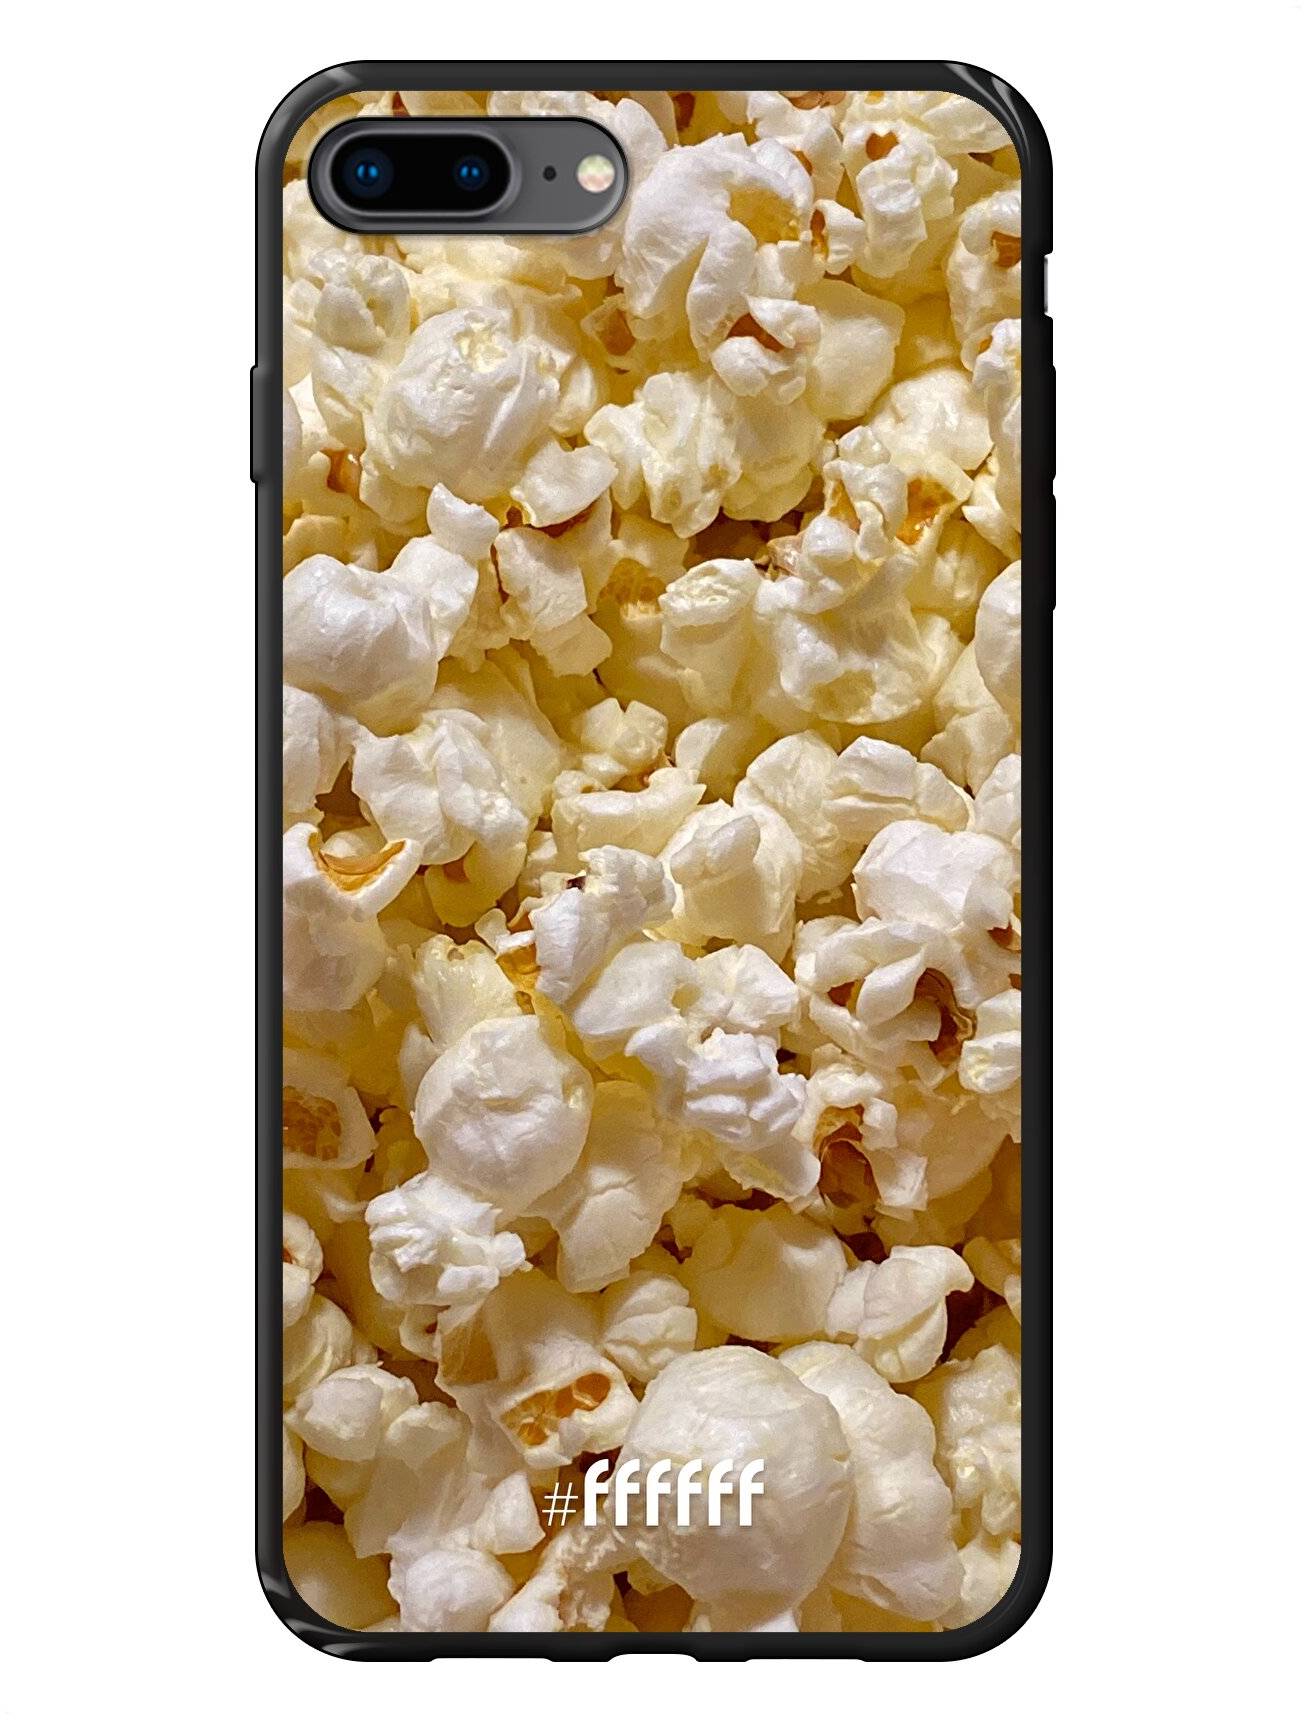 Popcorn iPhone 8 Plus